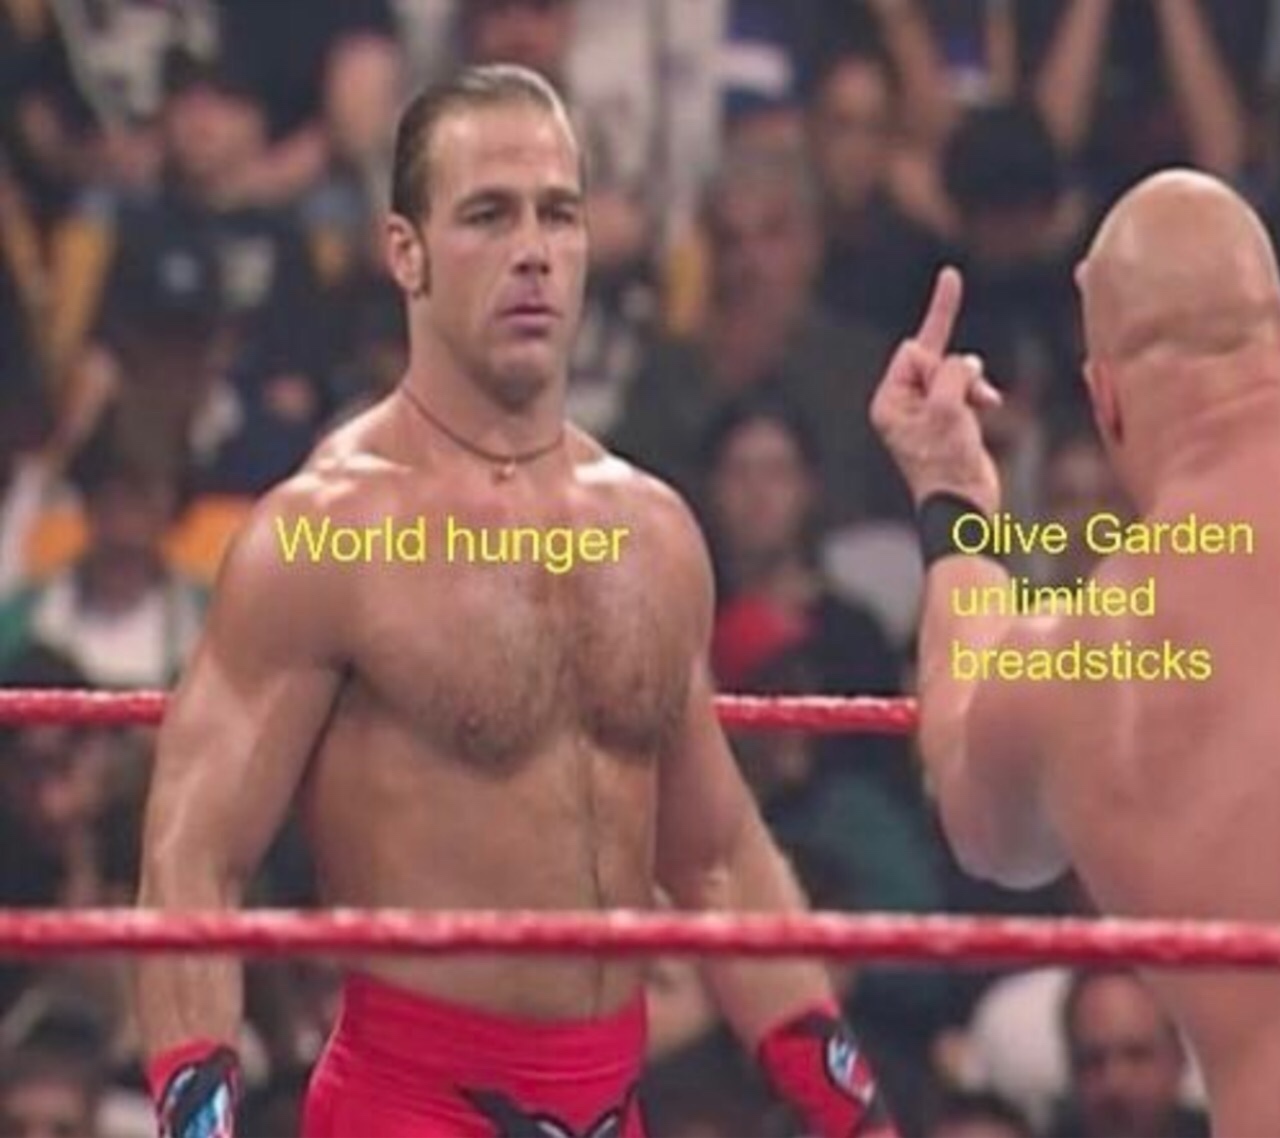 olive garden meme - world hunger olive garden - World hunger Olive Garden unlimited breadsticks